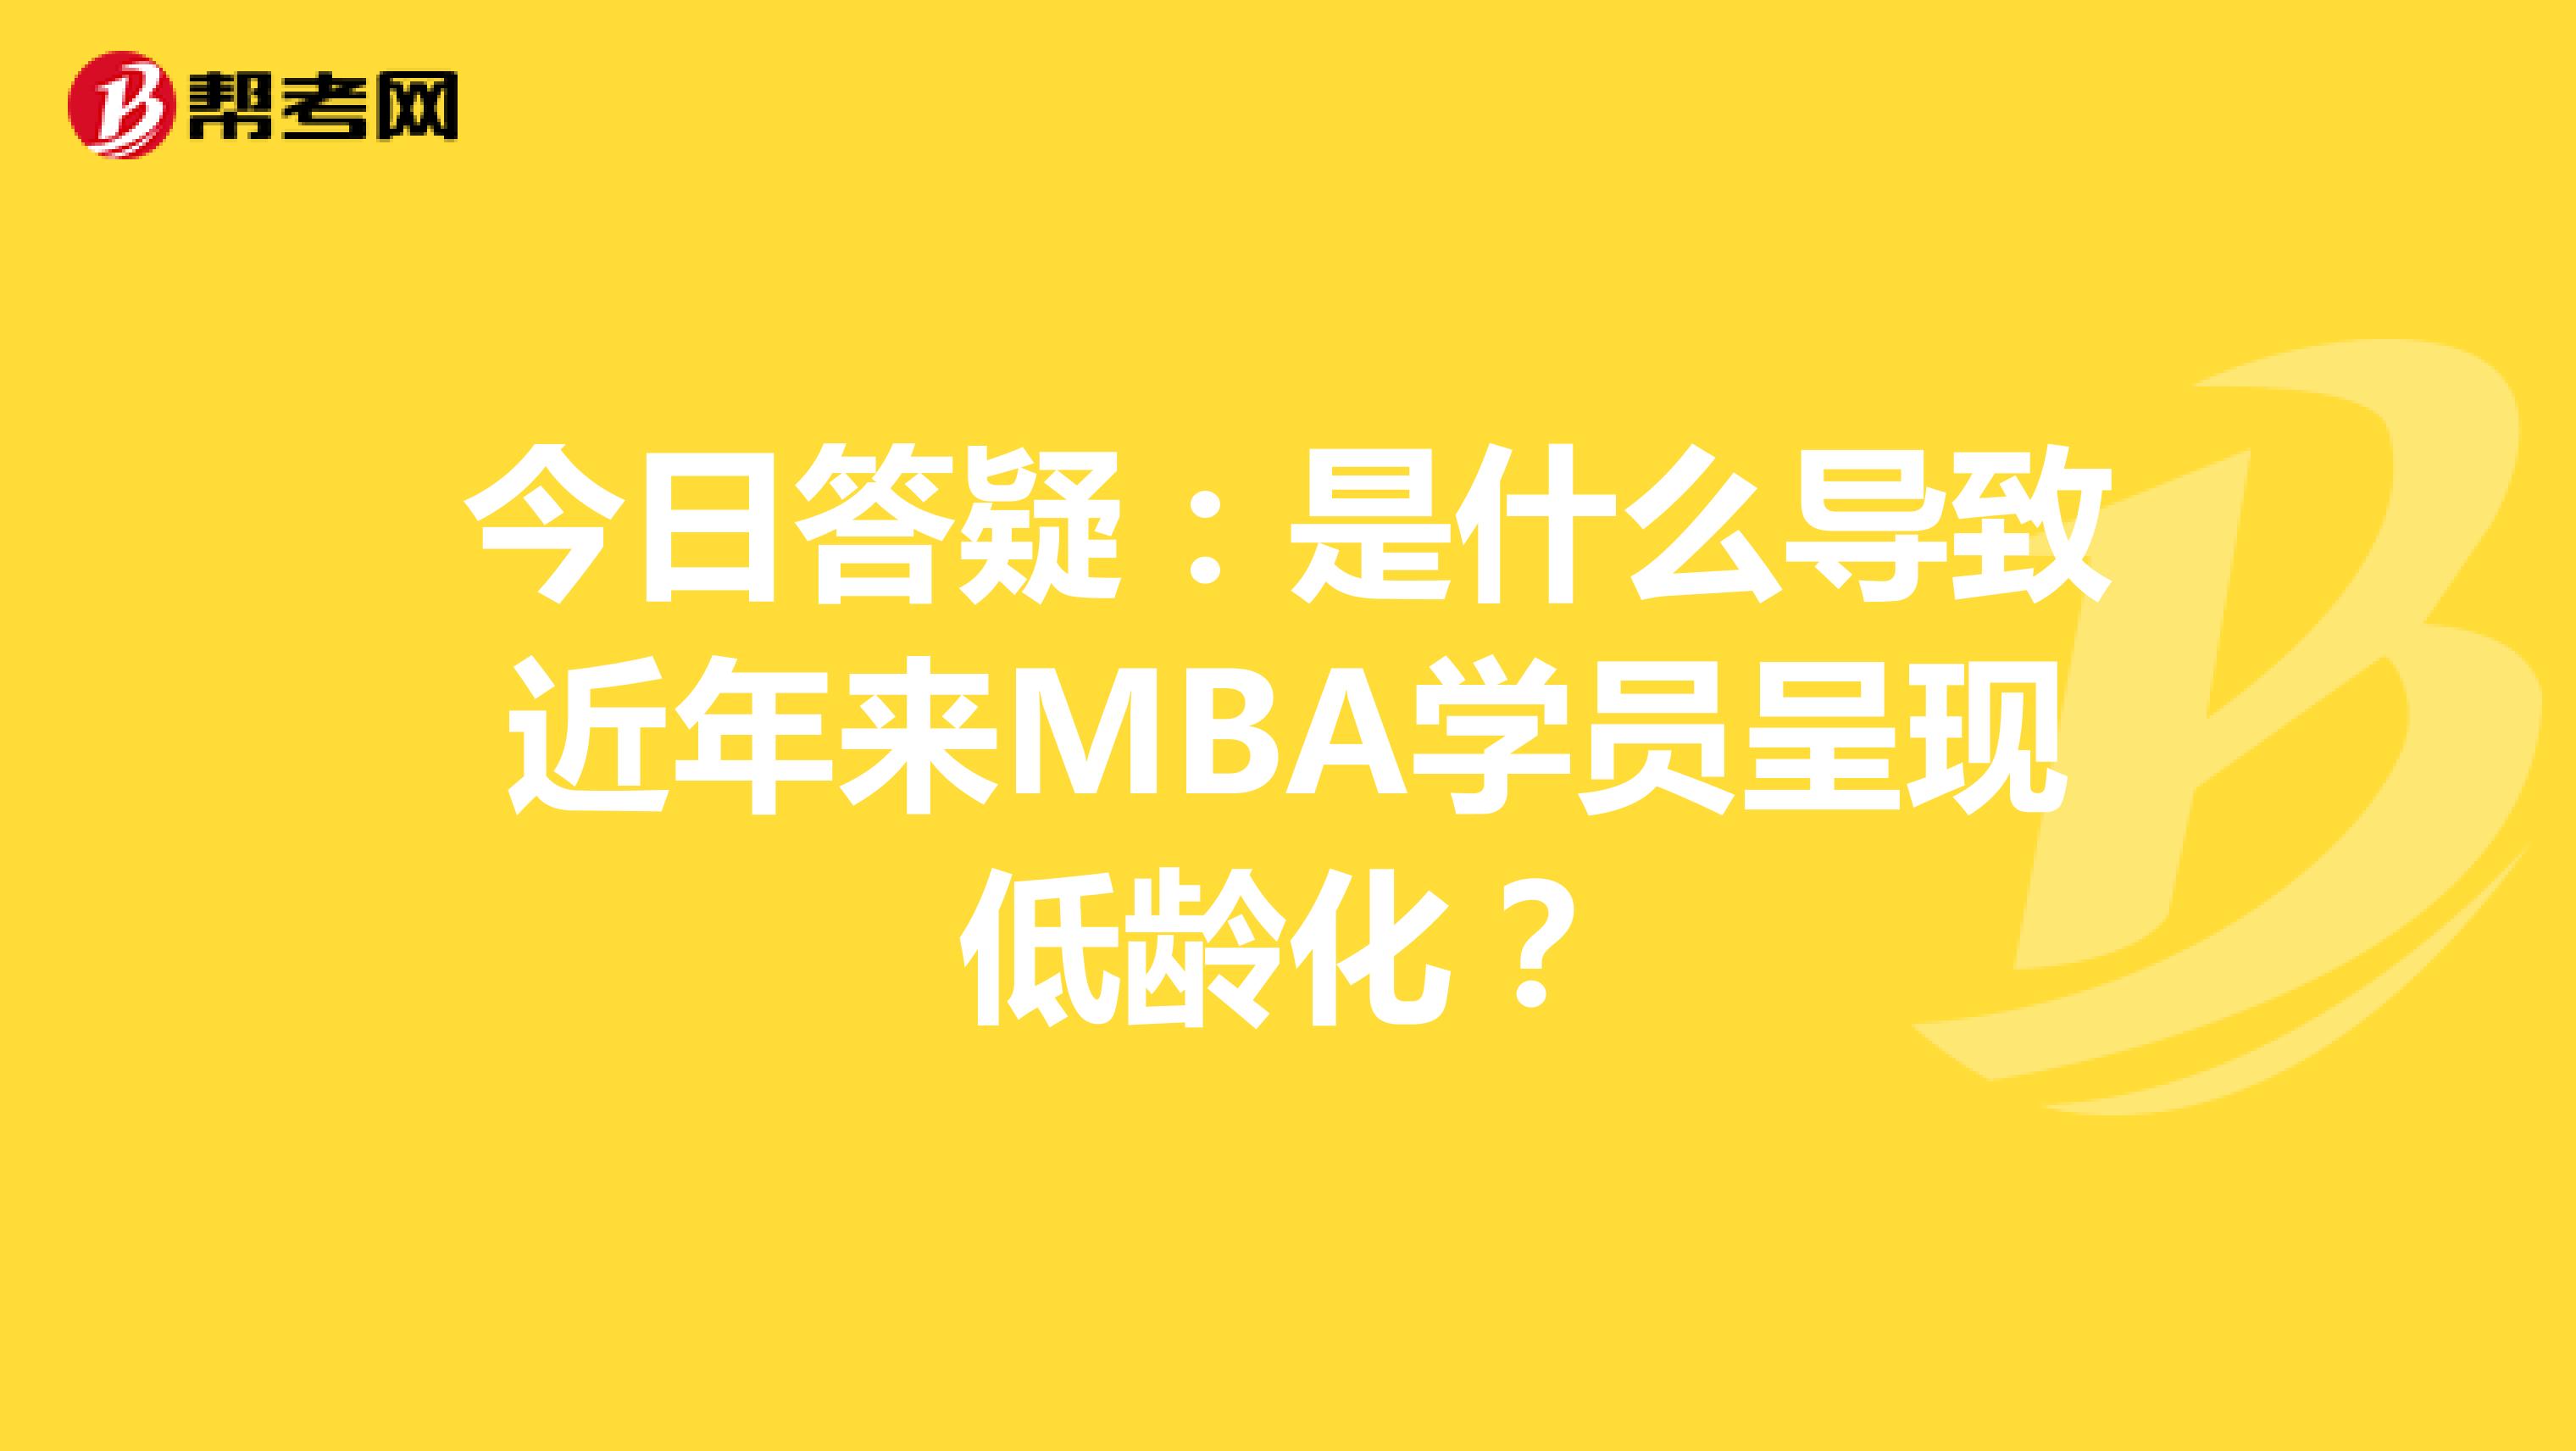 今日答疑：是什么导致近年来MBA学员呈现低龄化？